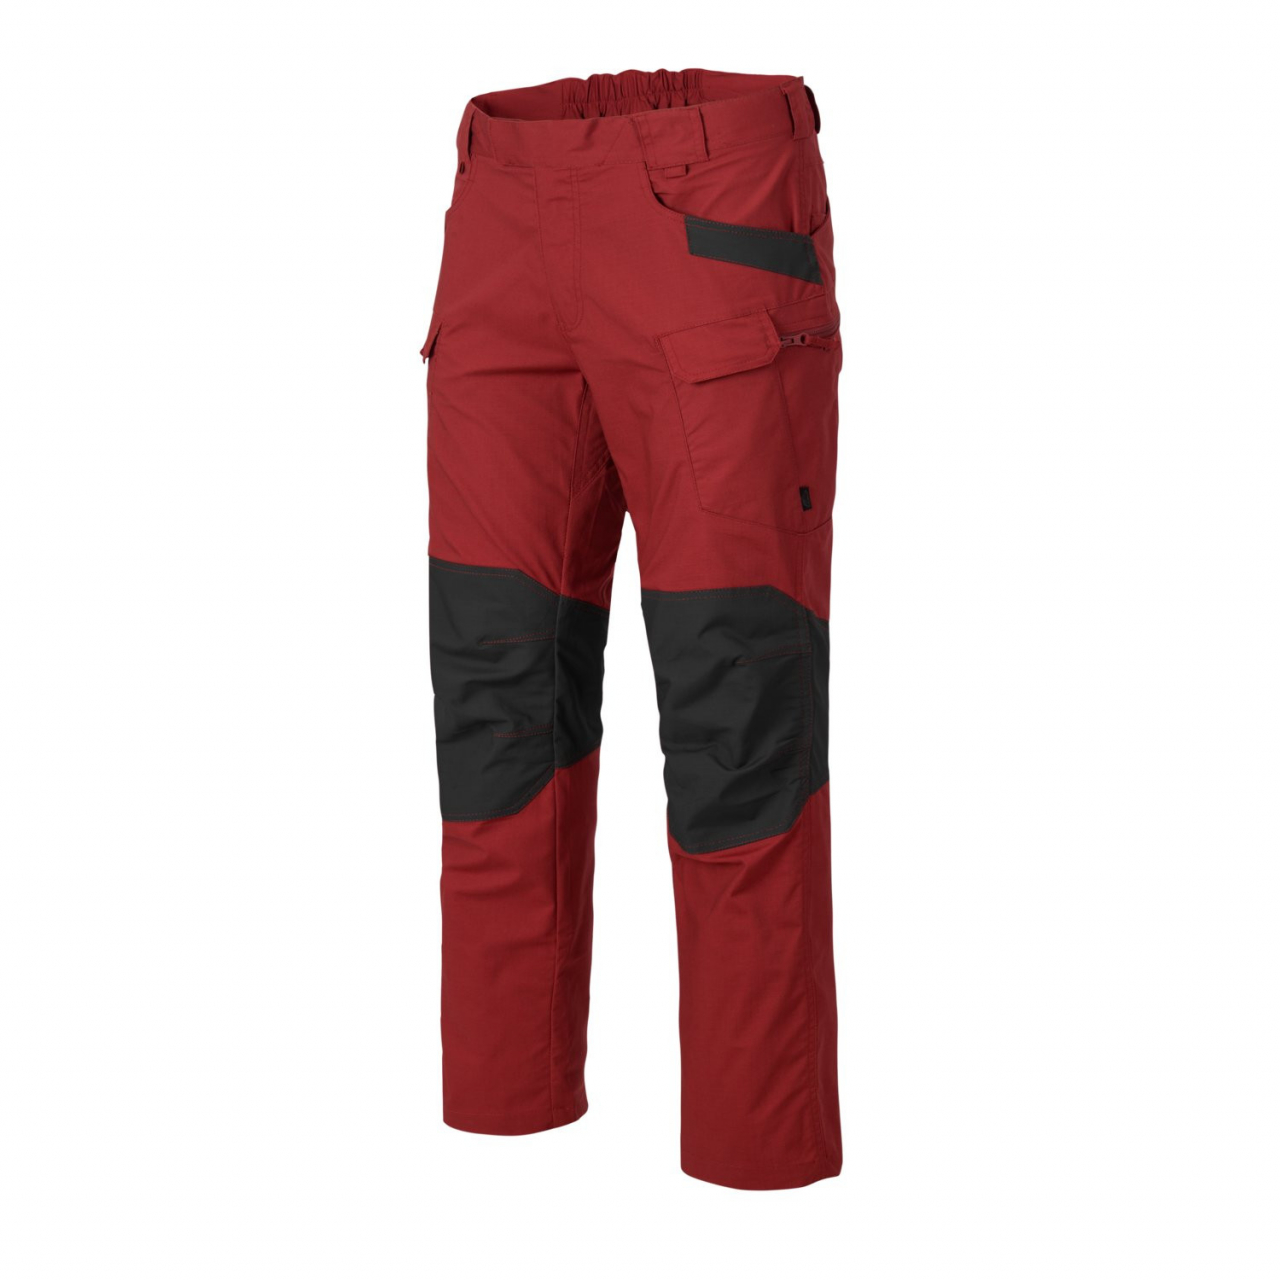 Kalhoty Helikon UTP PolyCotton Ripstop - červené-šedé, 4XL